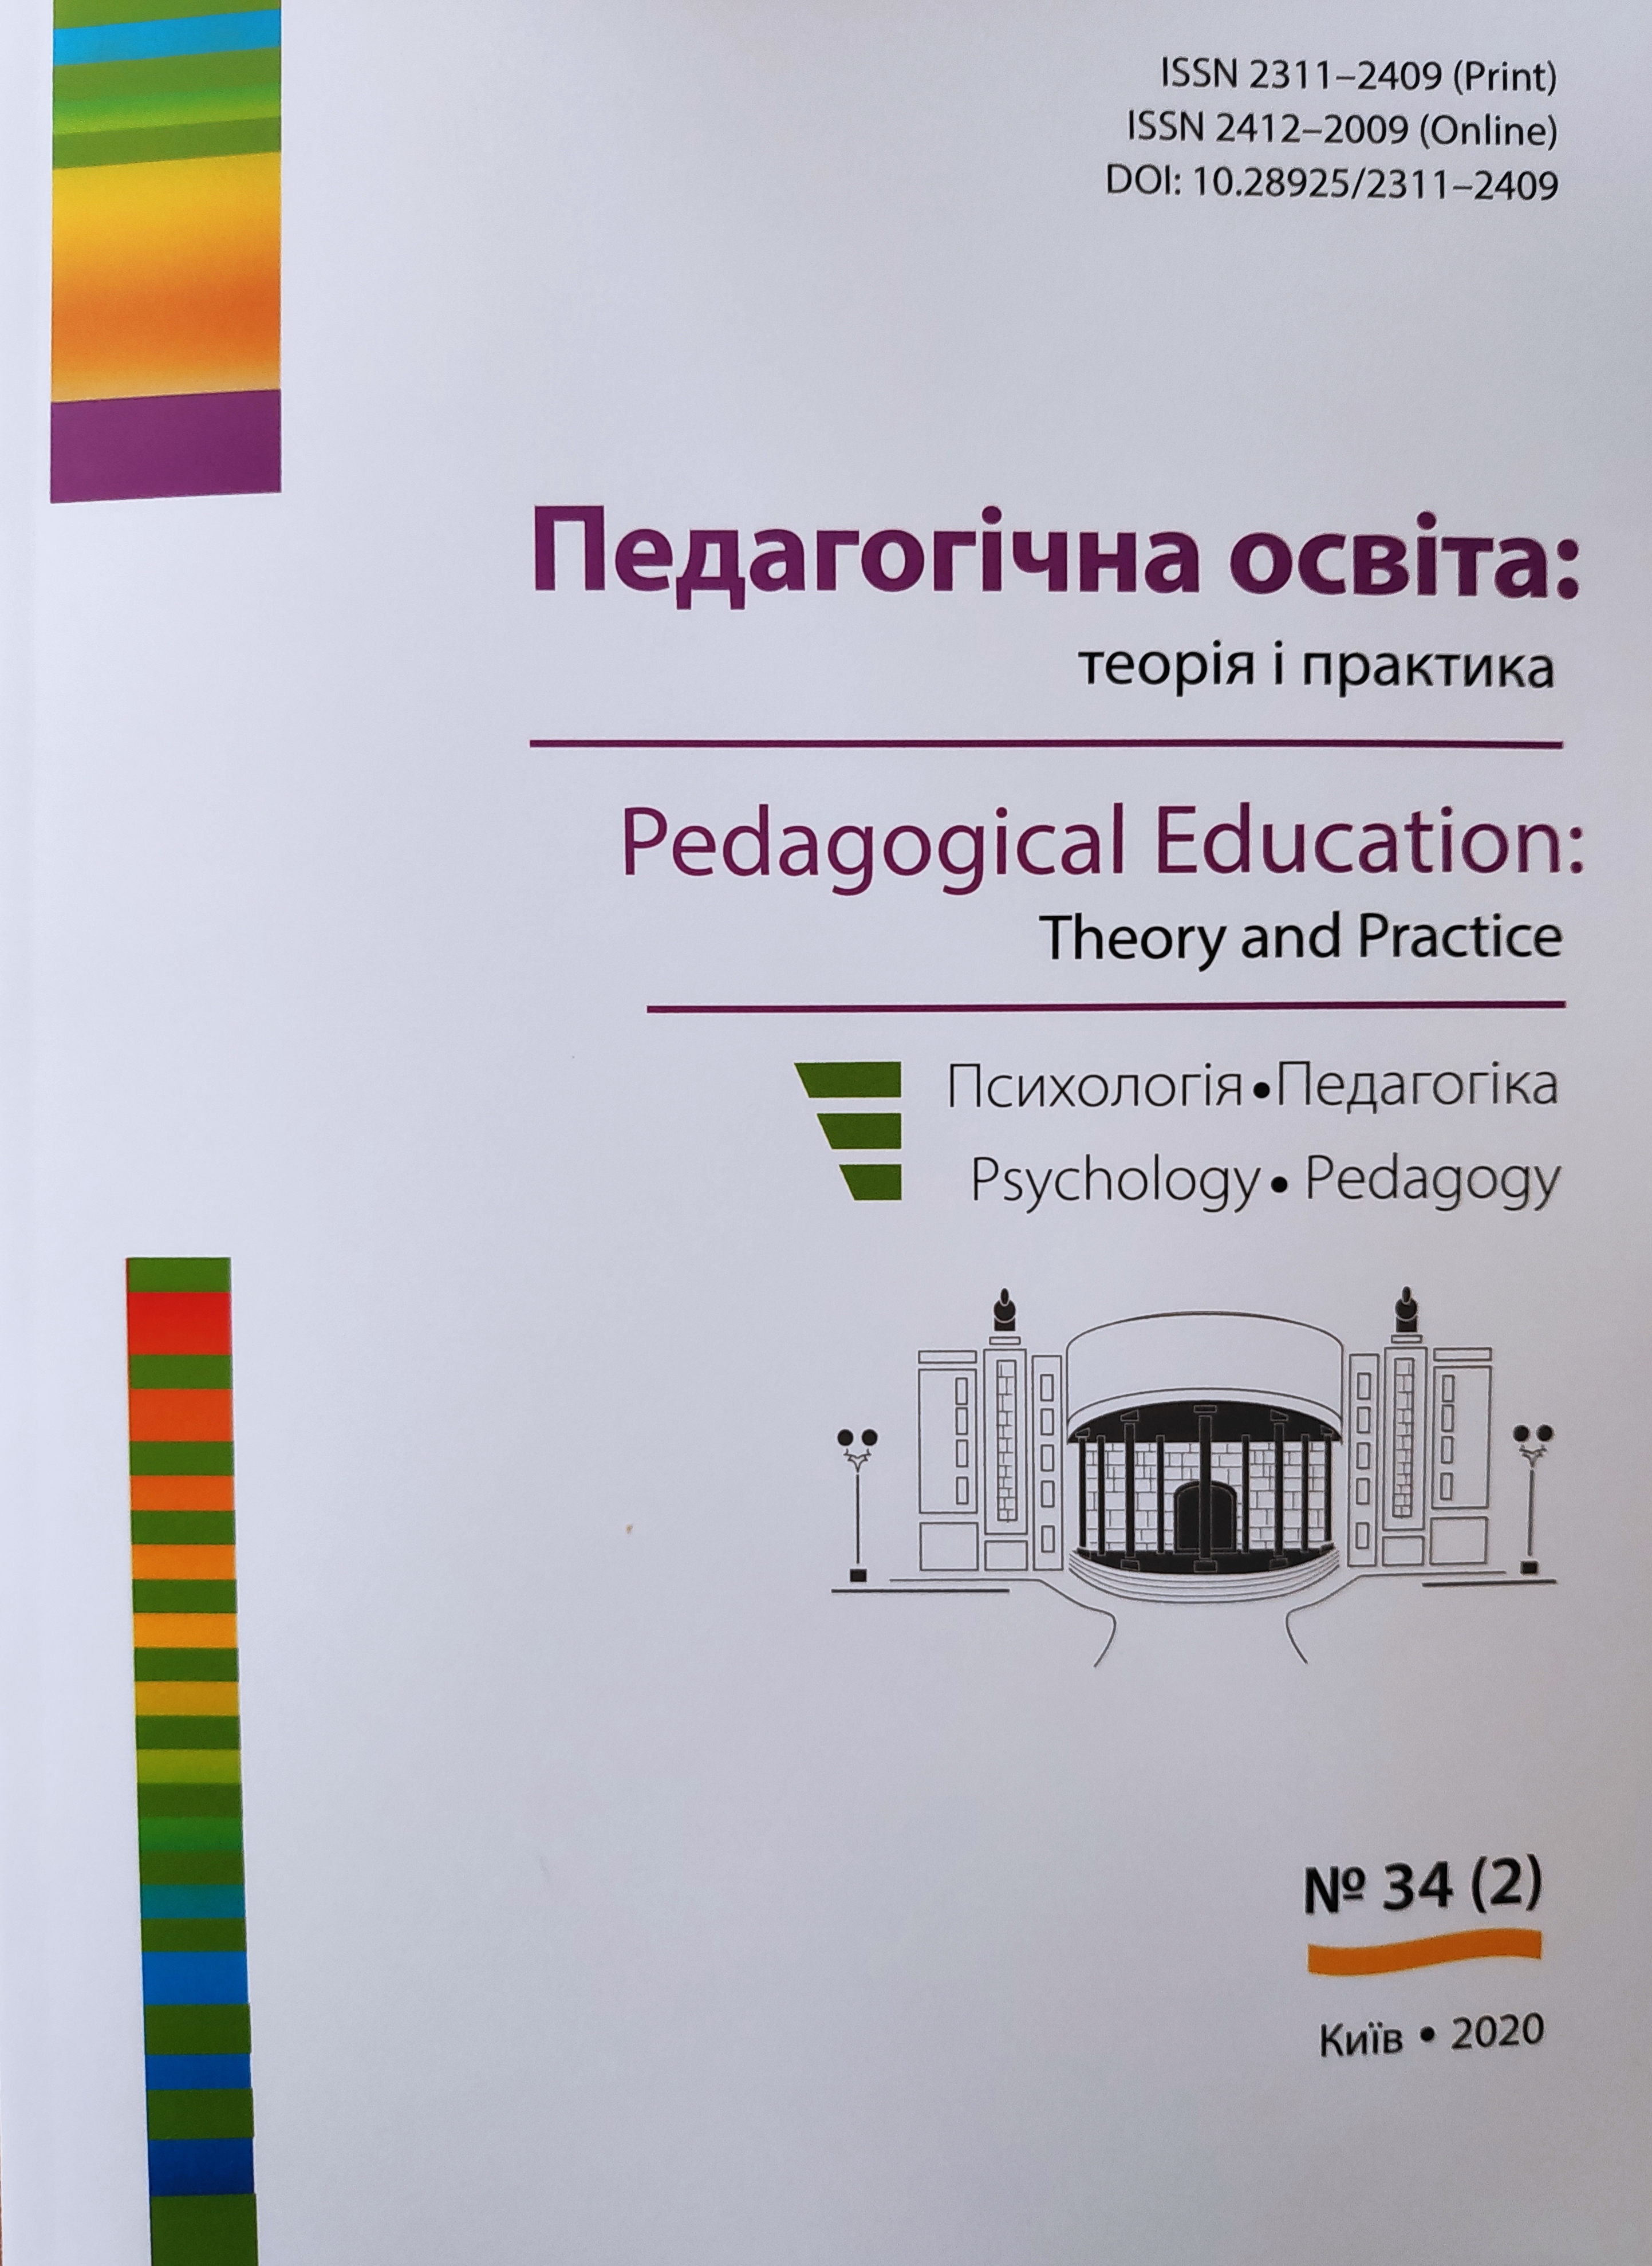 					View № 34 (2) (2020): Педагогічна освіта:теорія і практика.  Психологія. Педагогіка. 
				